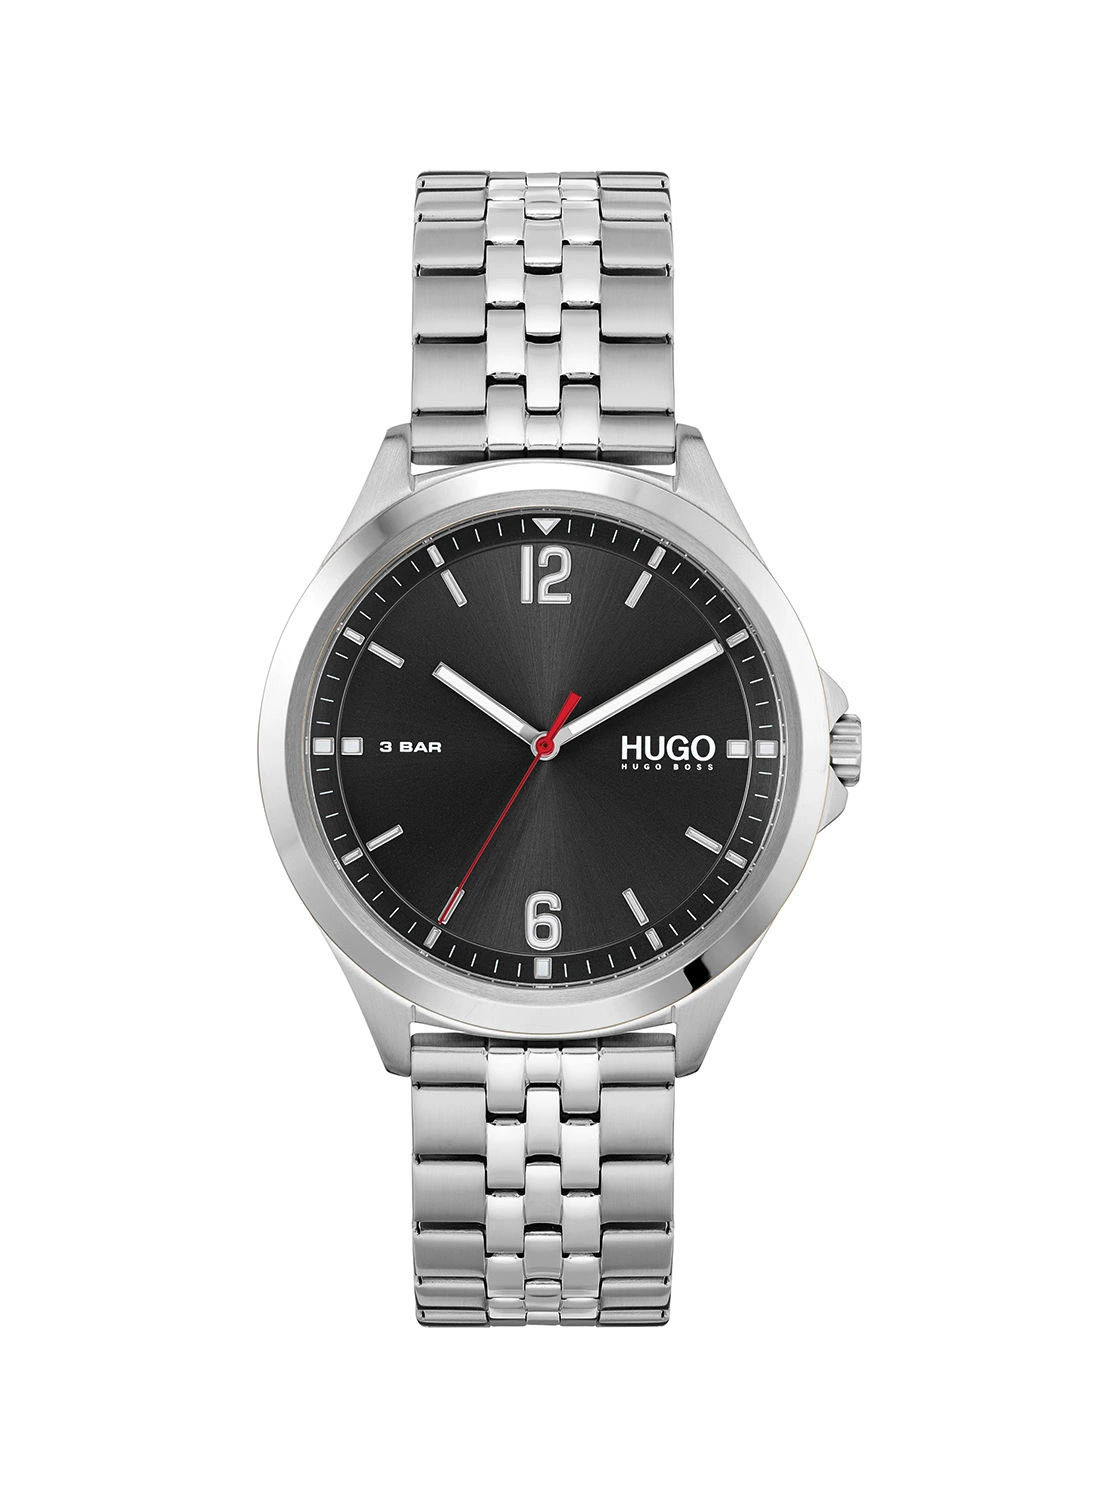 HUGO BOSS Men's #Suit  Black Dial Watch - 1530216